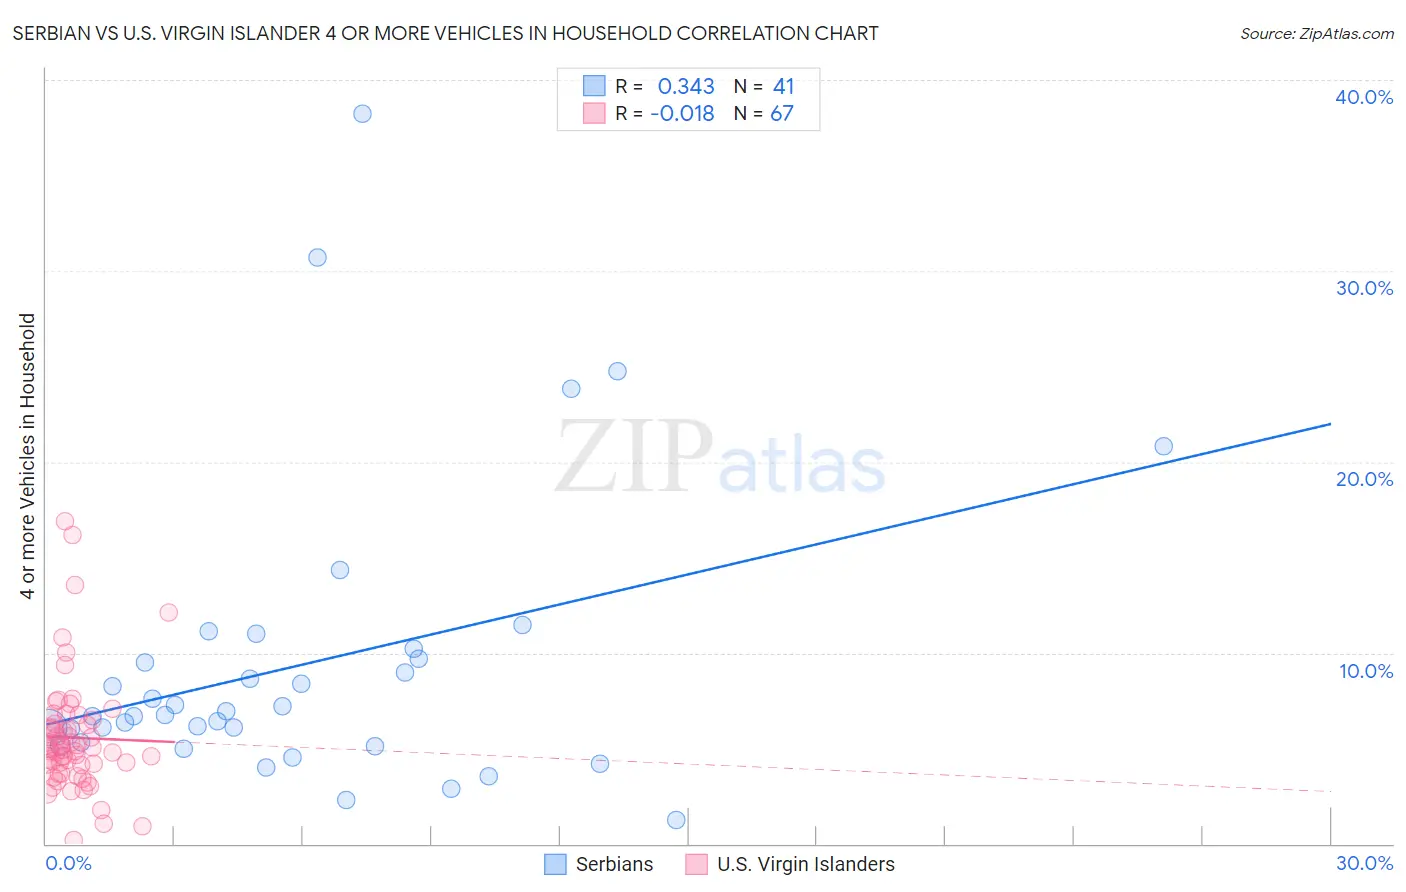 Serbian vs U.S. Virgin Islander 4 or more Vehicles in Household